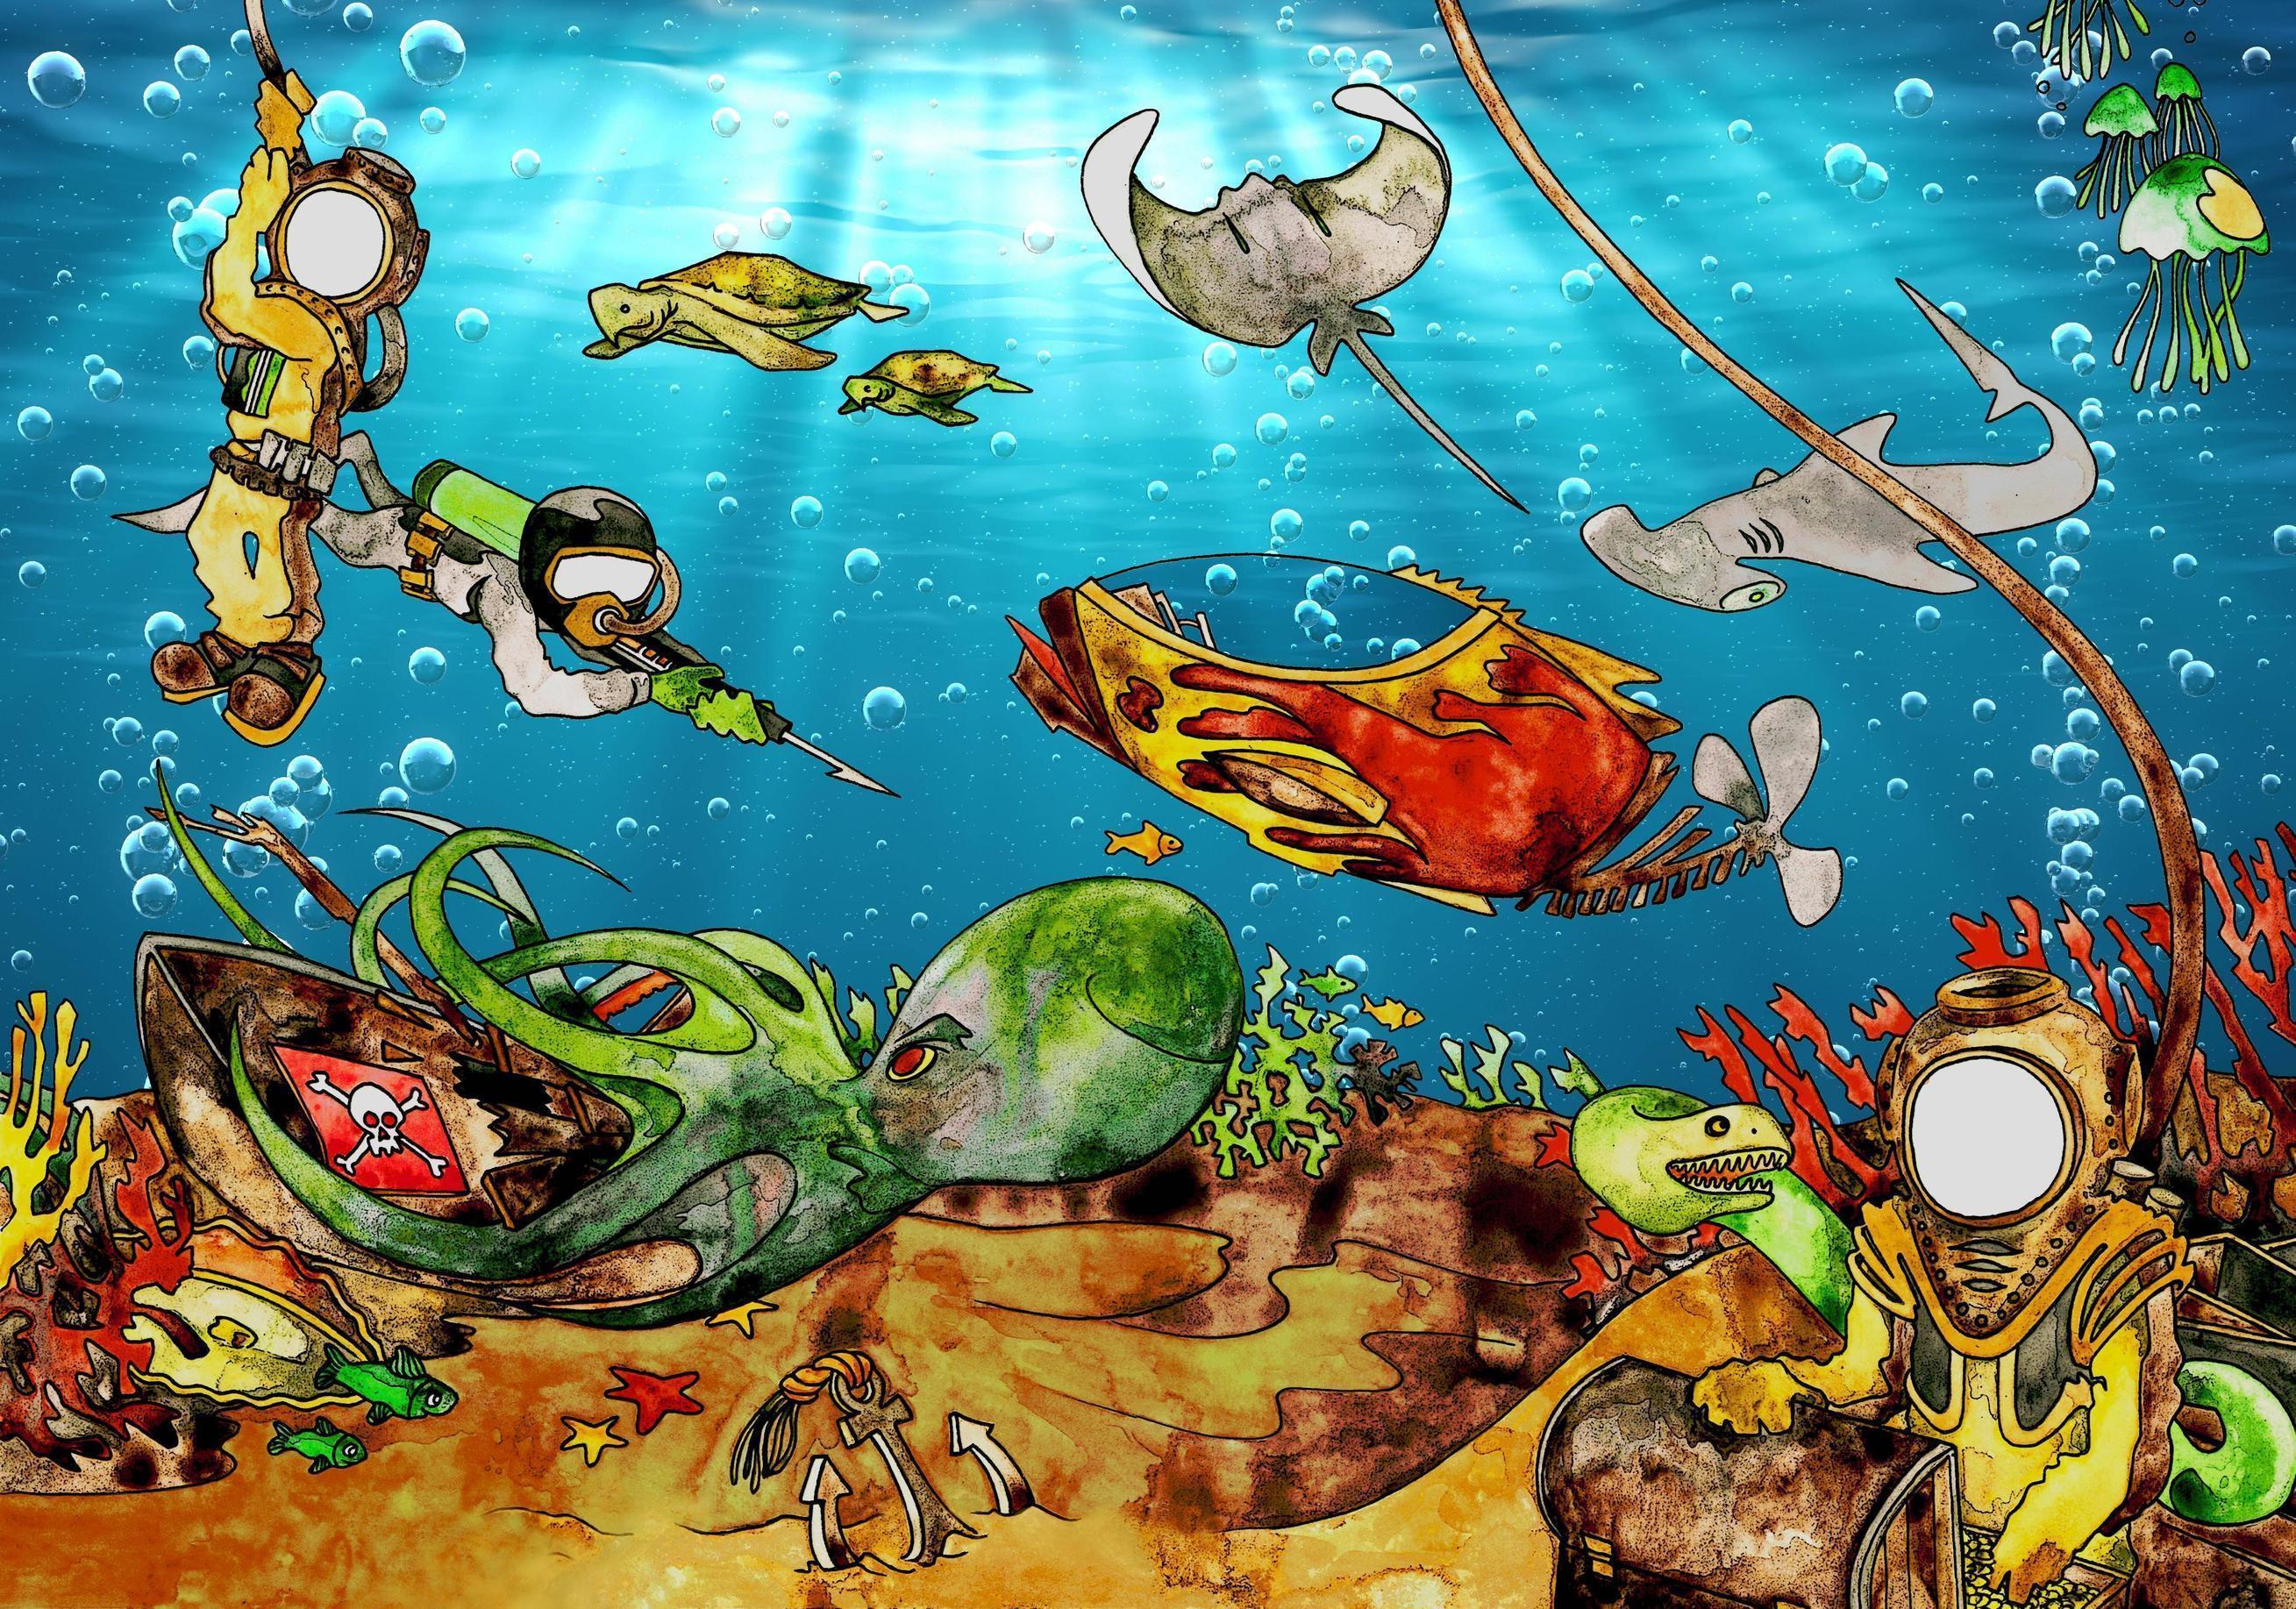 mural kids Wallpaper free mural kids Kids Ocean Theme